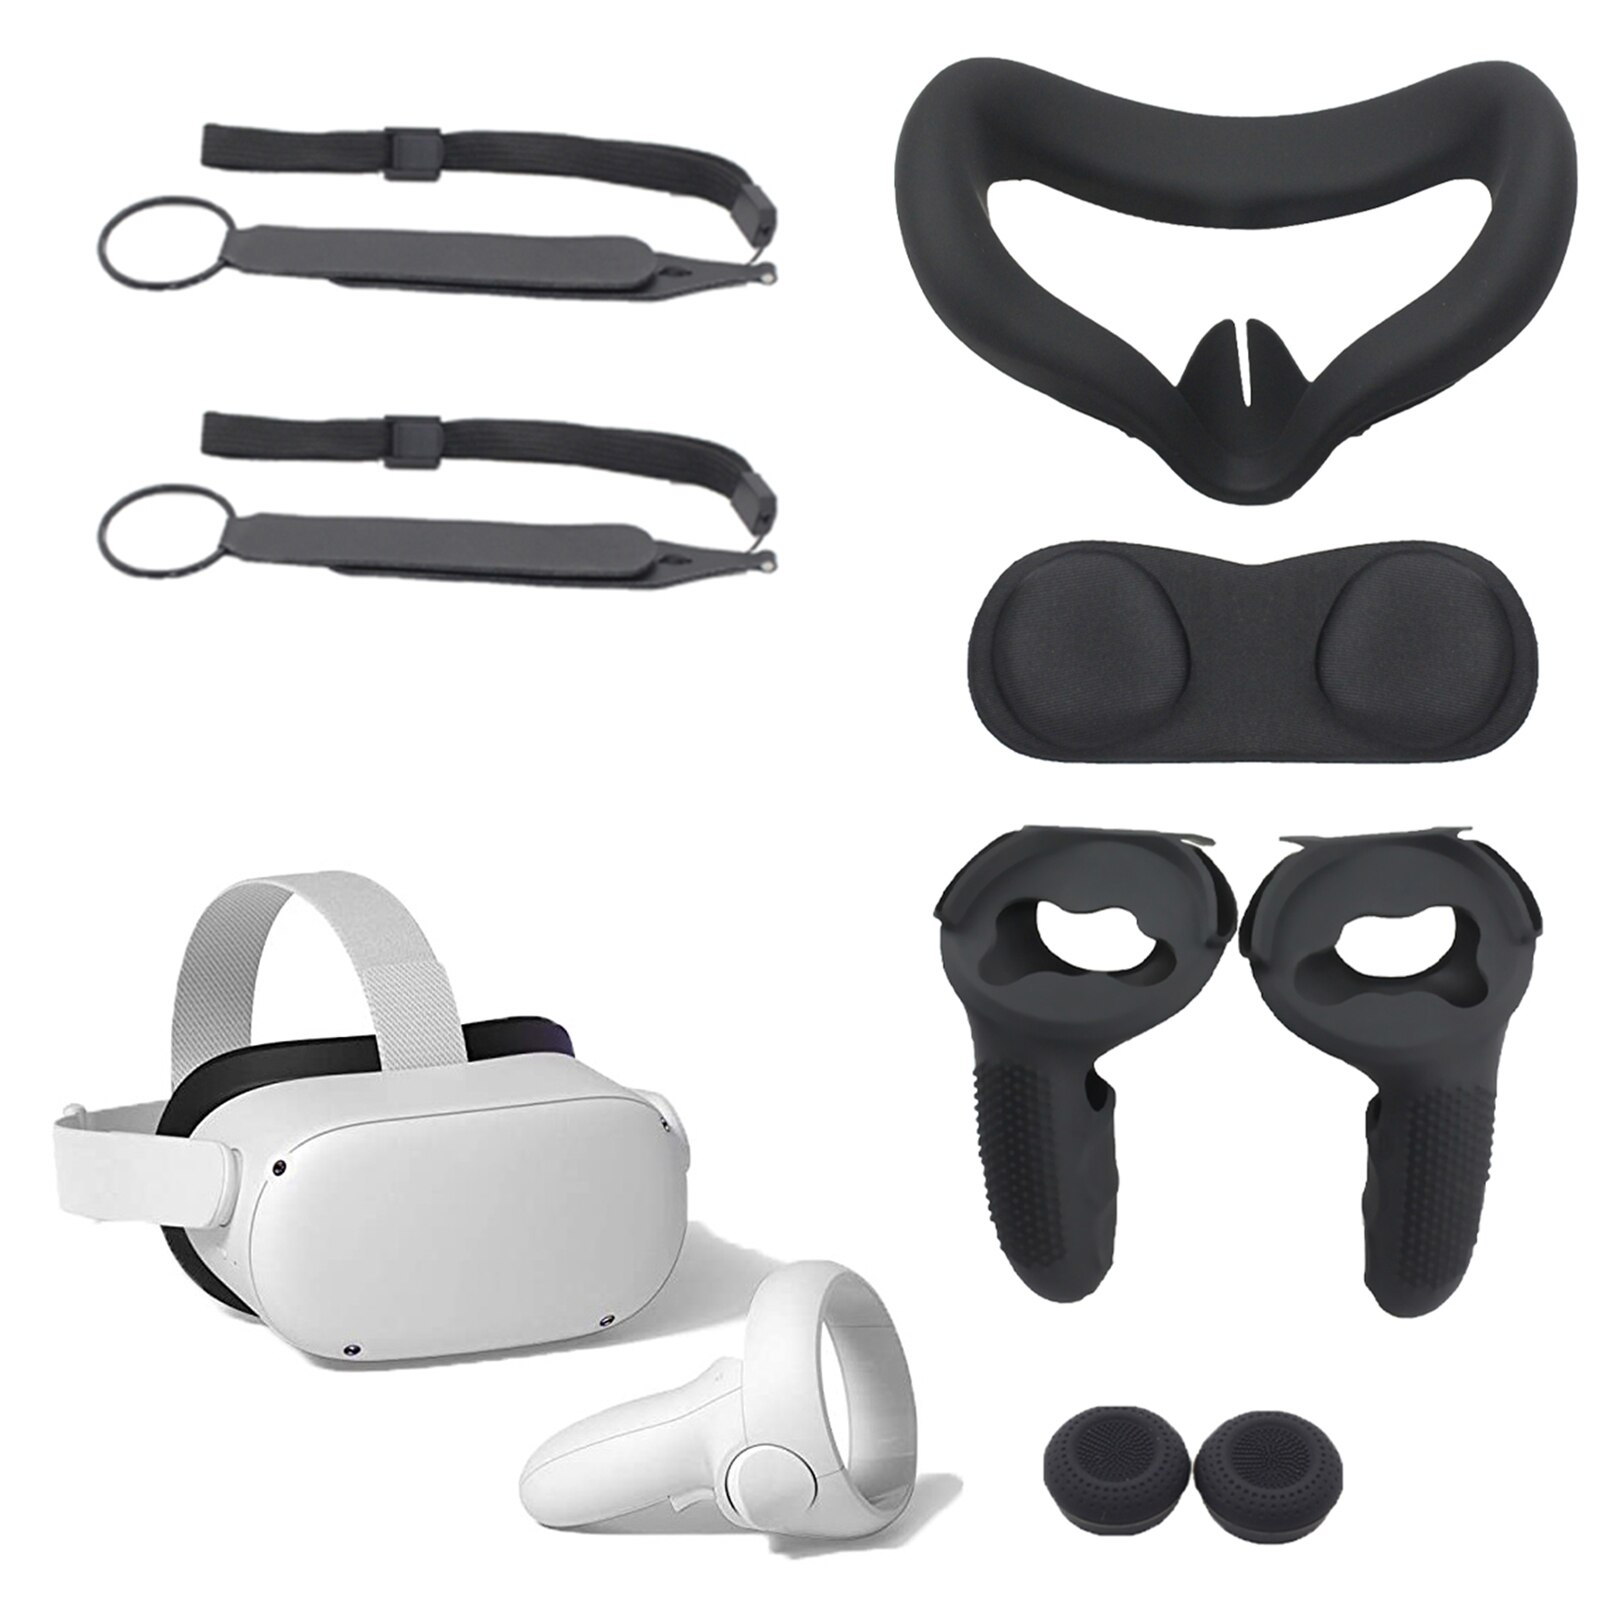 Beschermhoes Voor Oculus Quest 2 Vr Touch Controller Case Met Knuckle Band Handvat Grip Voor Oculus Quest 2 Vr accessoires